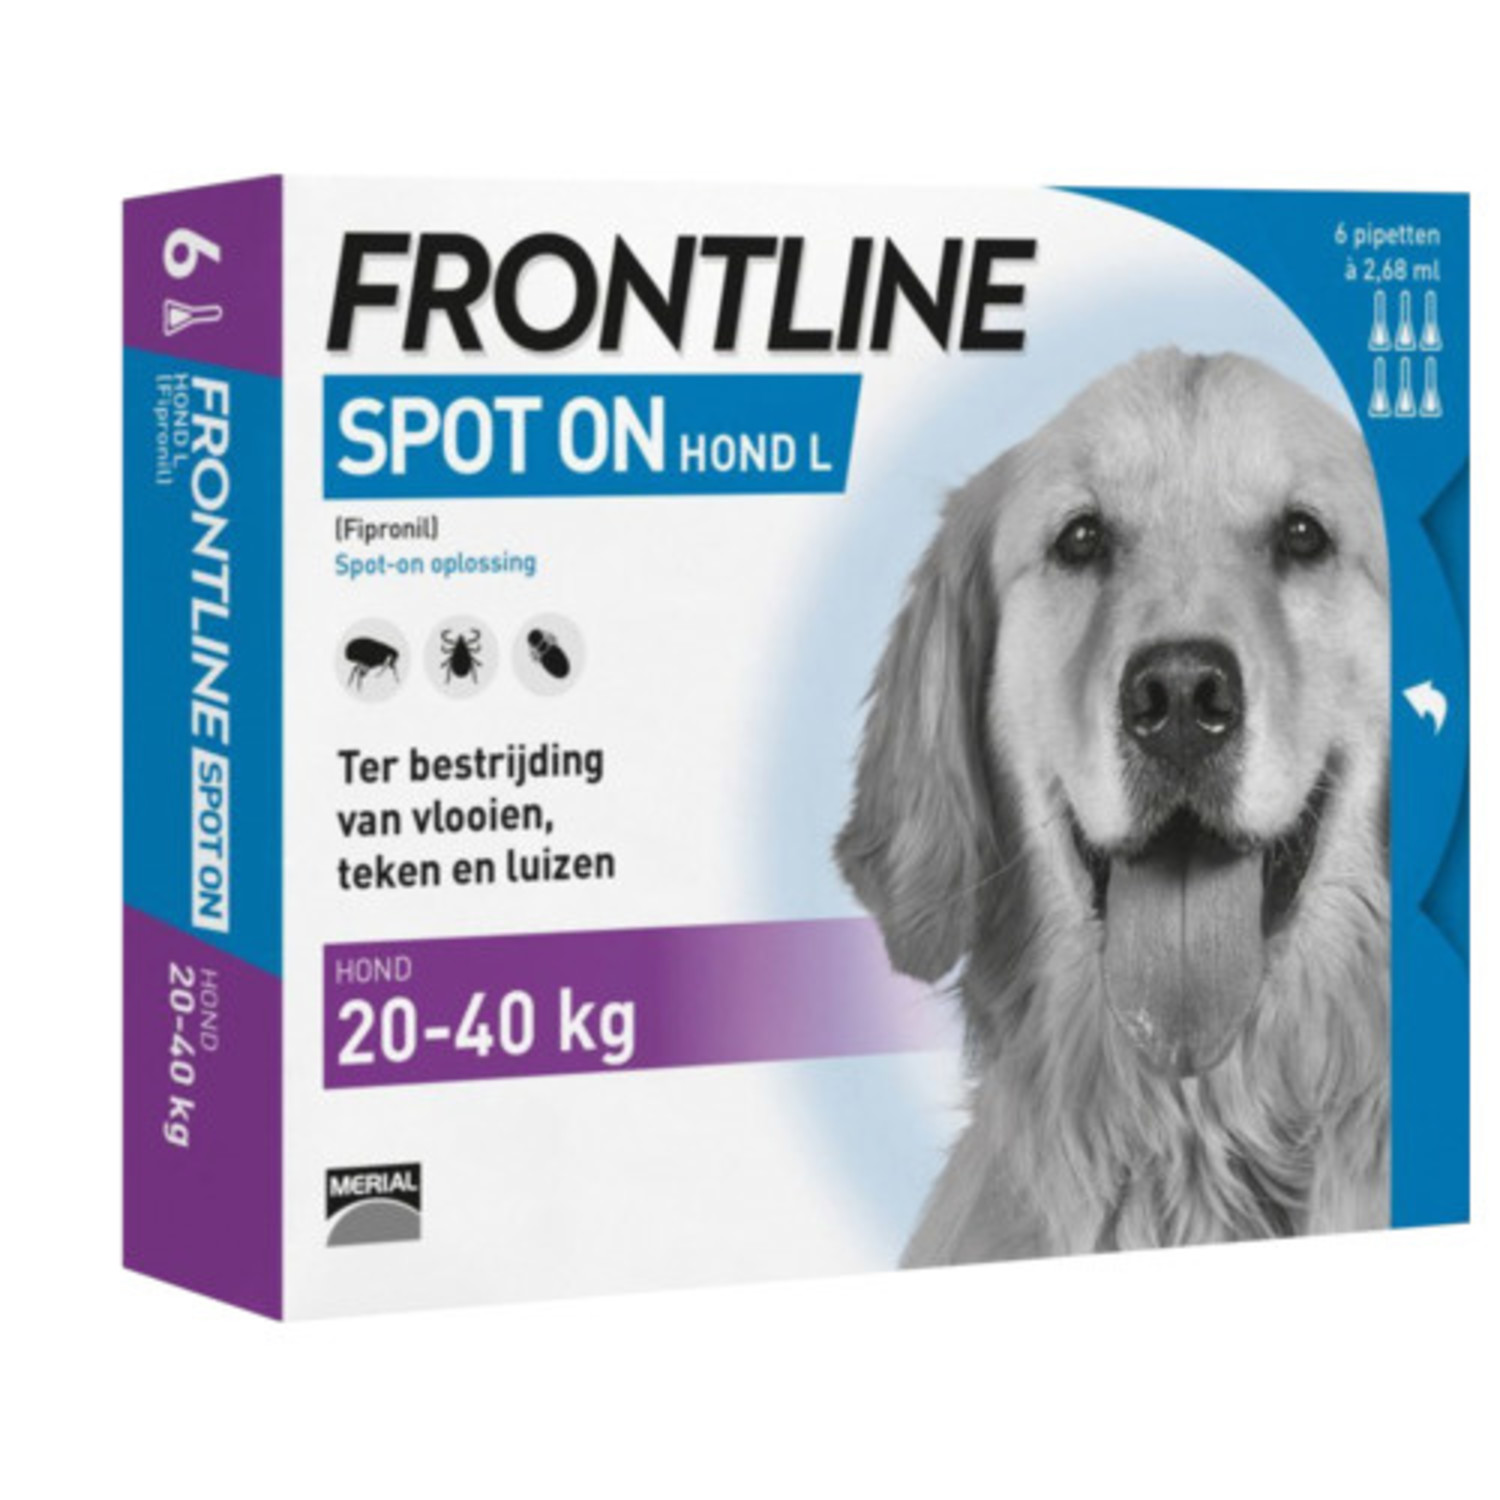 Kwaadaardige tumor hoog botsing Frontline Spot On Hond L (20 tot 40 kg) 6 pipetten - Agridiscounter